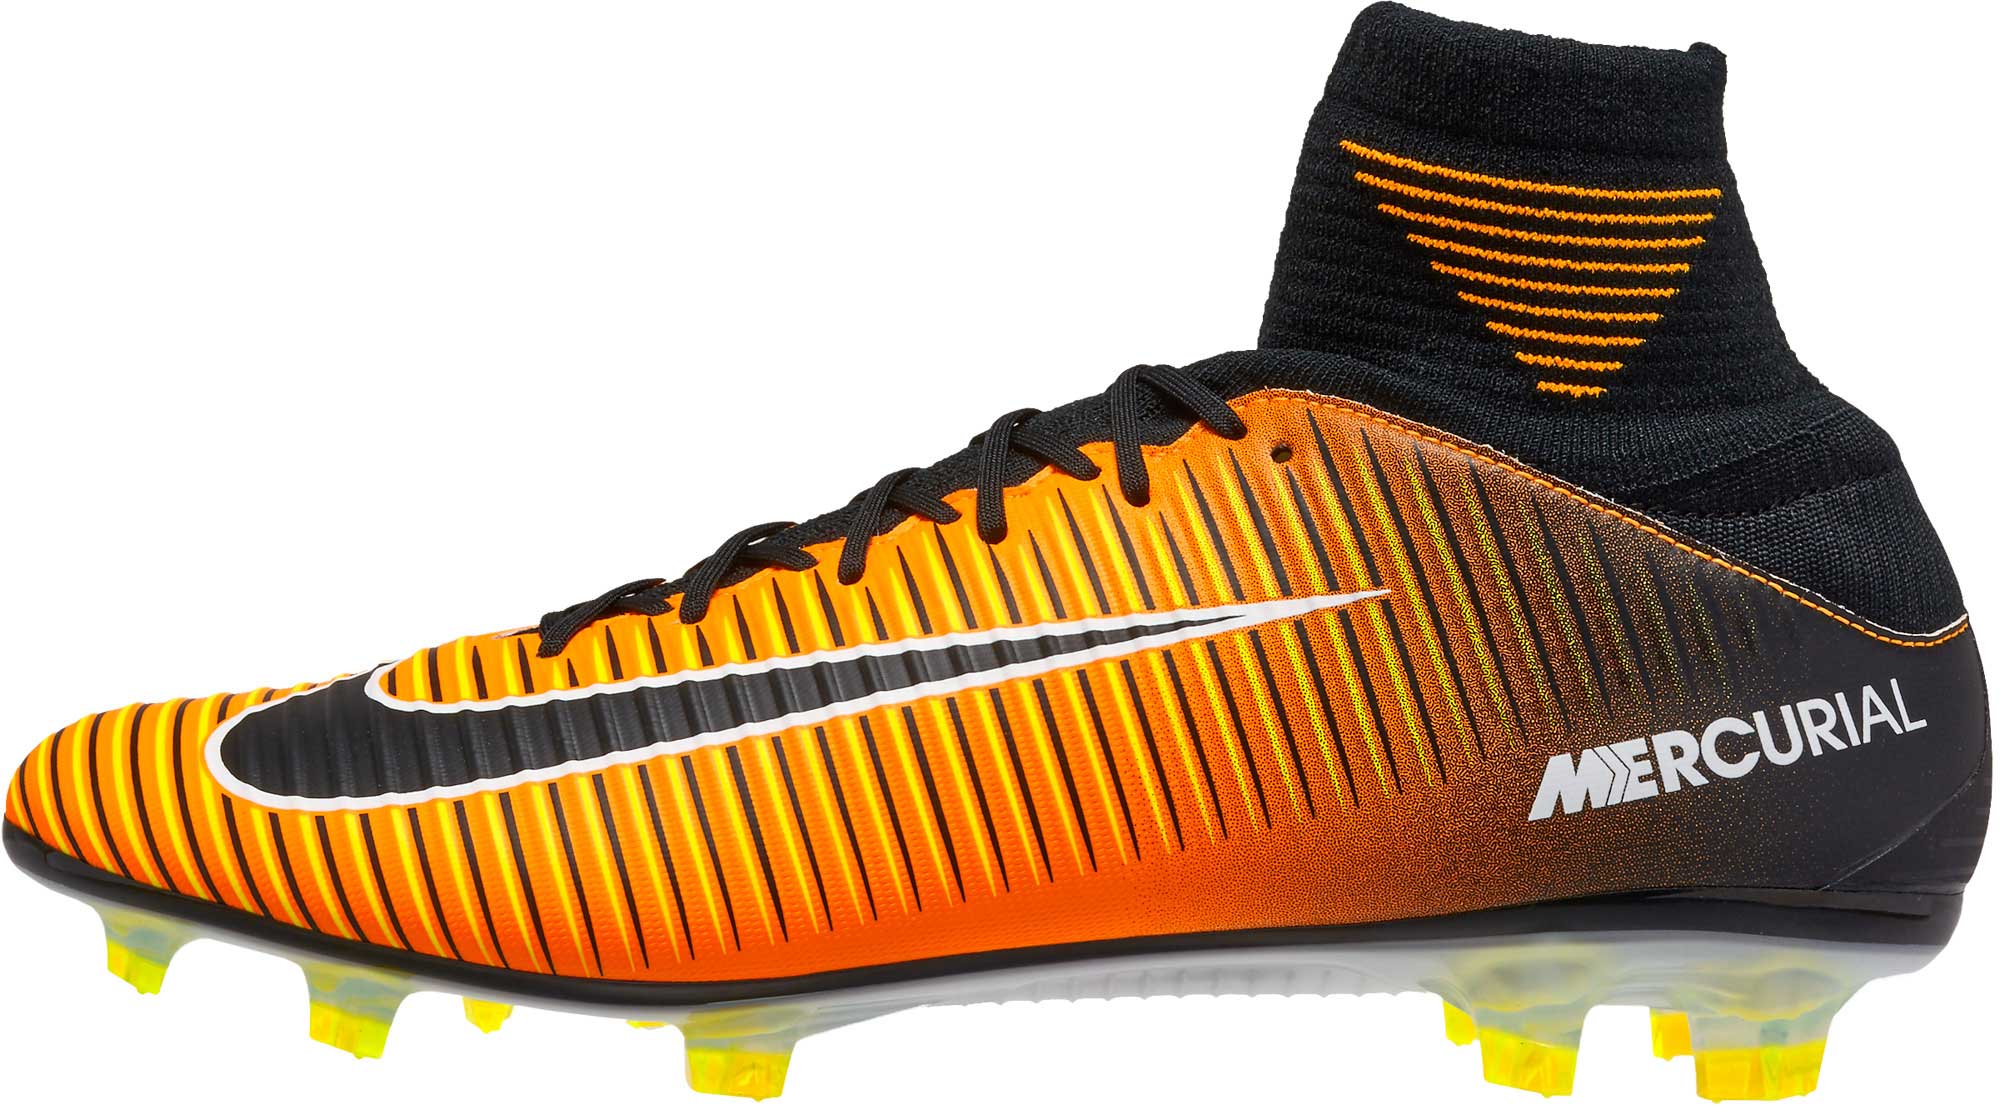 Ombord Glad Føde Nike Mercurial Veloce III DF FG Soccer Cleats - Laser Orange & Black -  Soccer Master